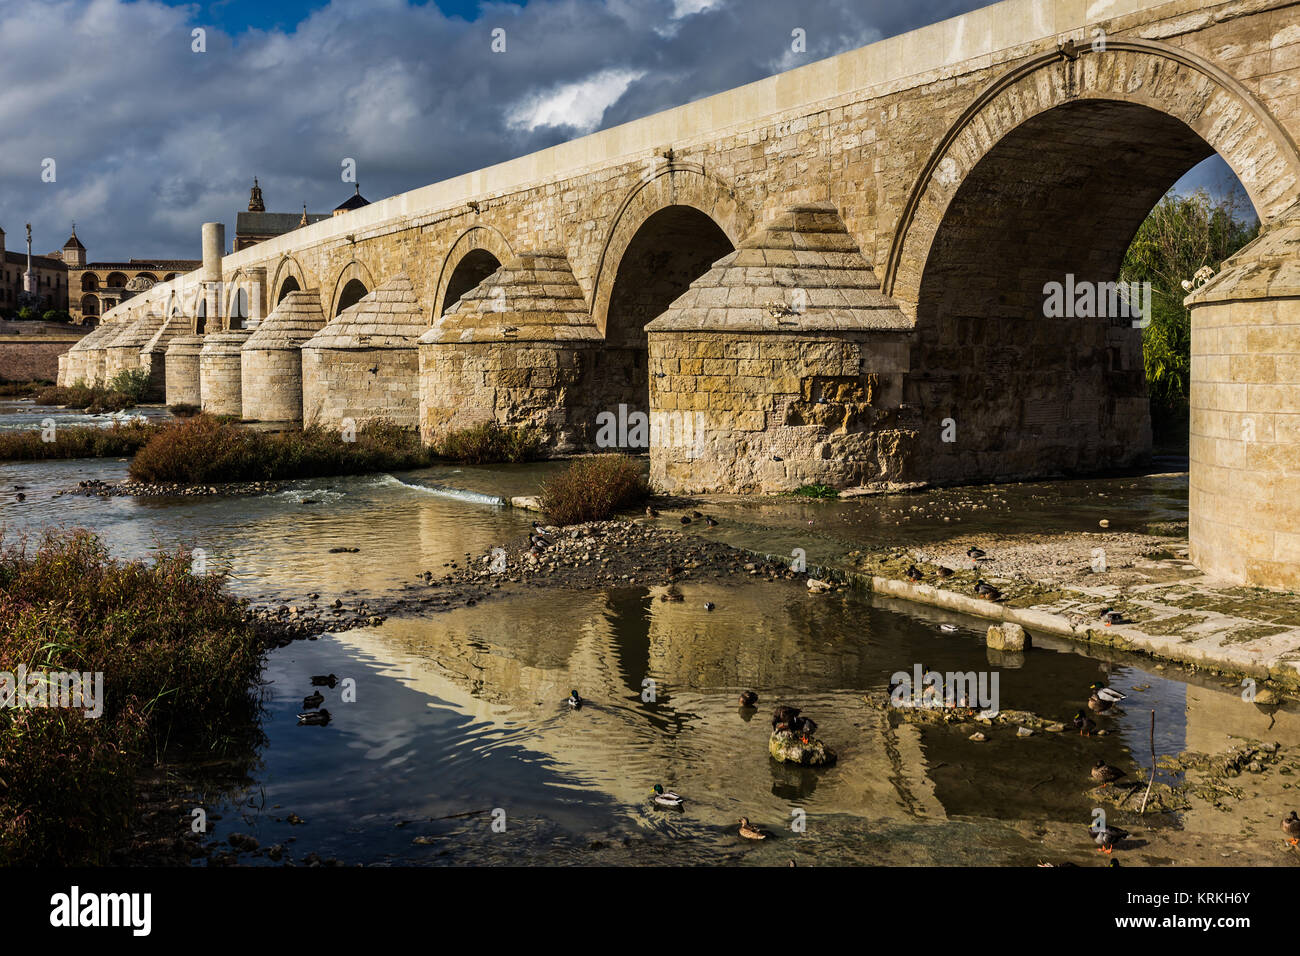 Guadalquivir river with the Roman bridge in Cordoba. Spain. Stock Photo